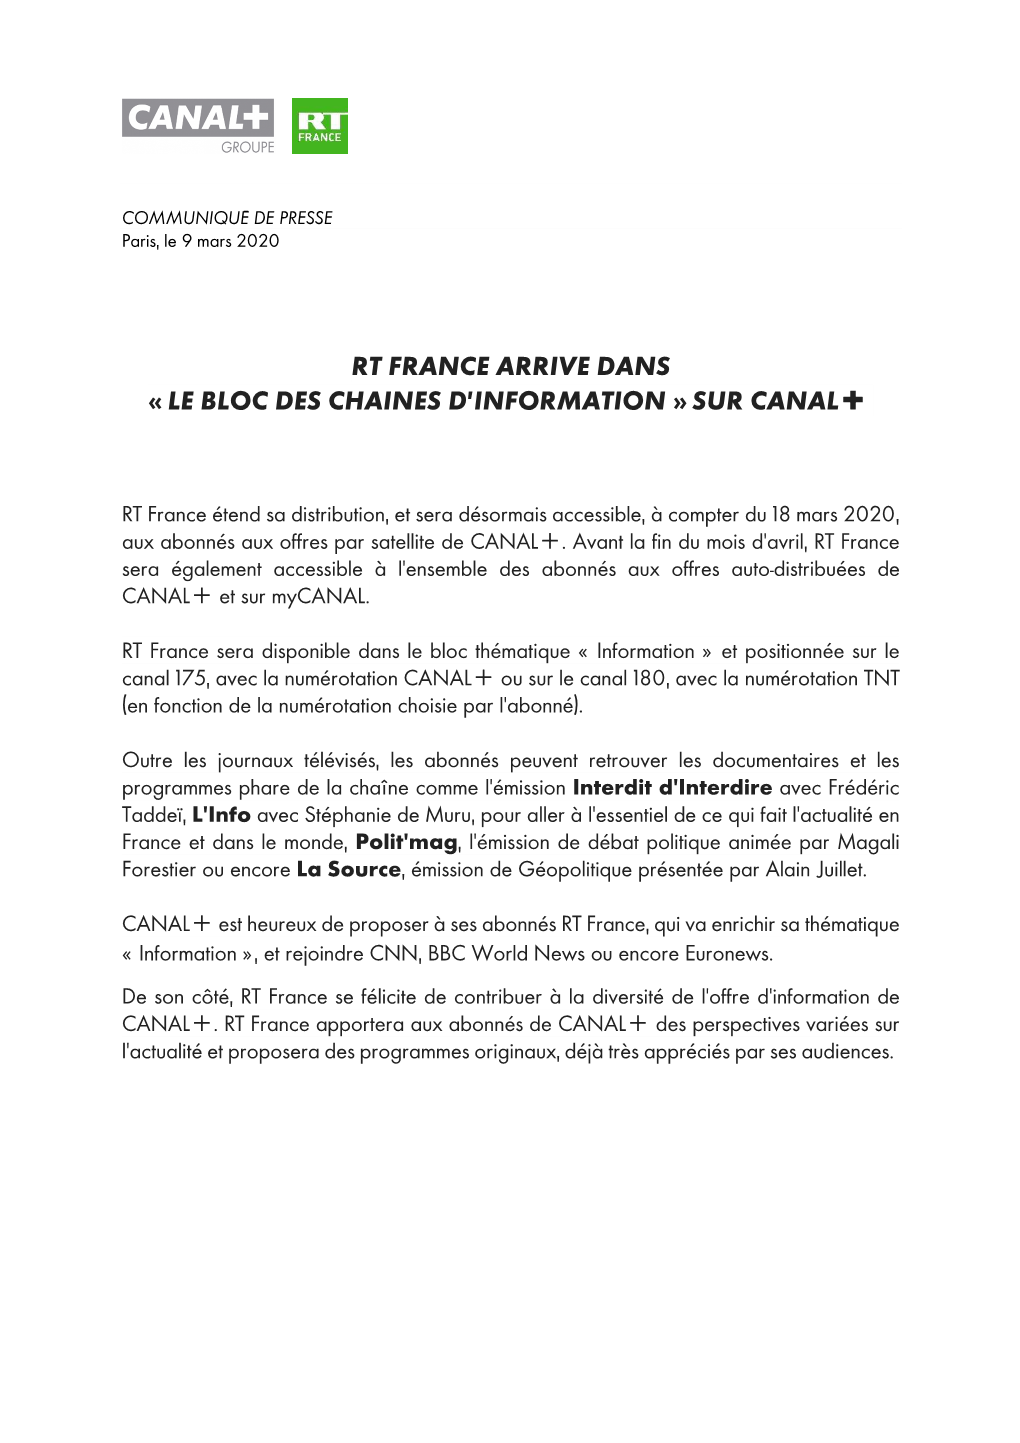 20200309 Commuiqué Groupe CANAL+ RT France